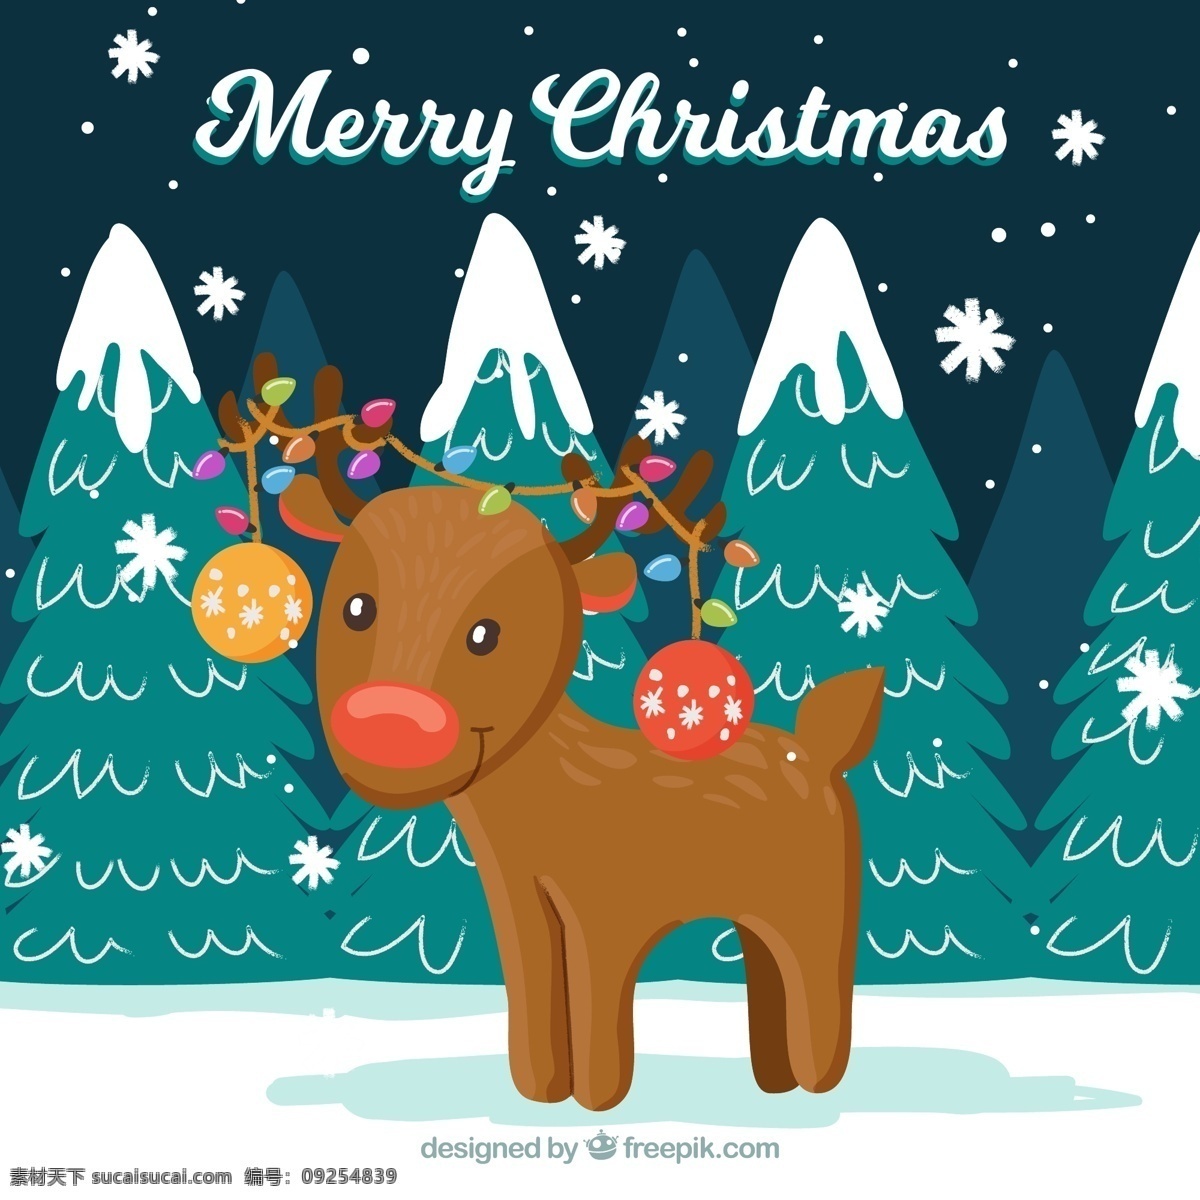 彩绘 雪地 圣诞 驯鹿 矢量 彩色 动物 节日 卡通 可爱 圣诞节 雪花 元素